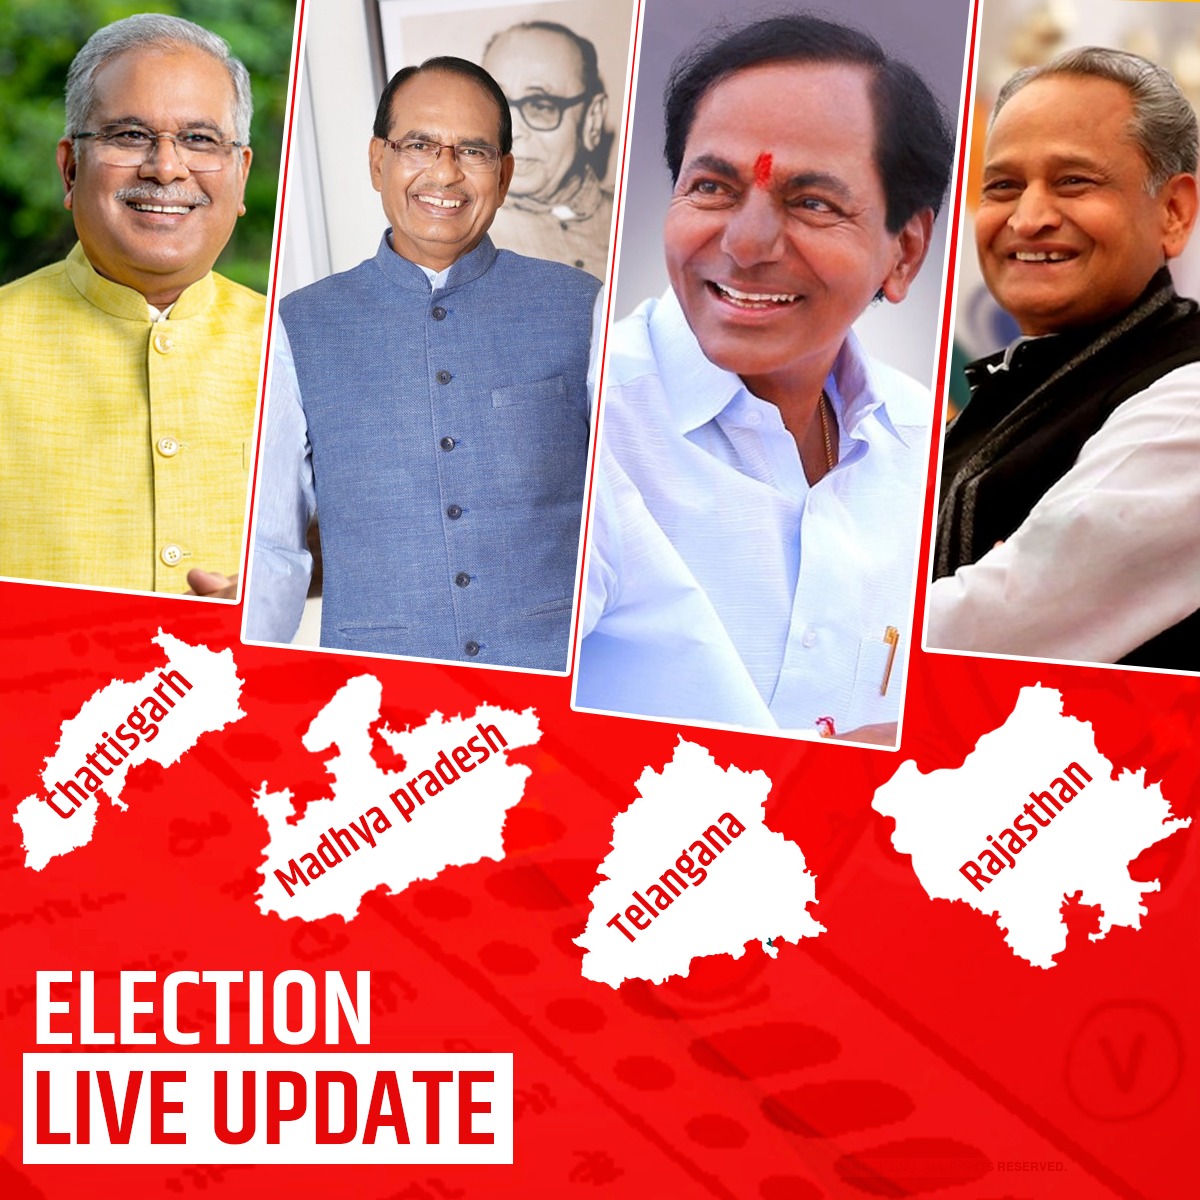 Election Result Live Update: एमपी, राजस्थान और छत्तीसगढ़ तीनों राज्यों में बीजेपी की जीत तय, तेलंगाना में कांग्रेस की सरकार